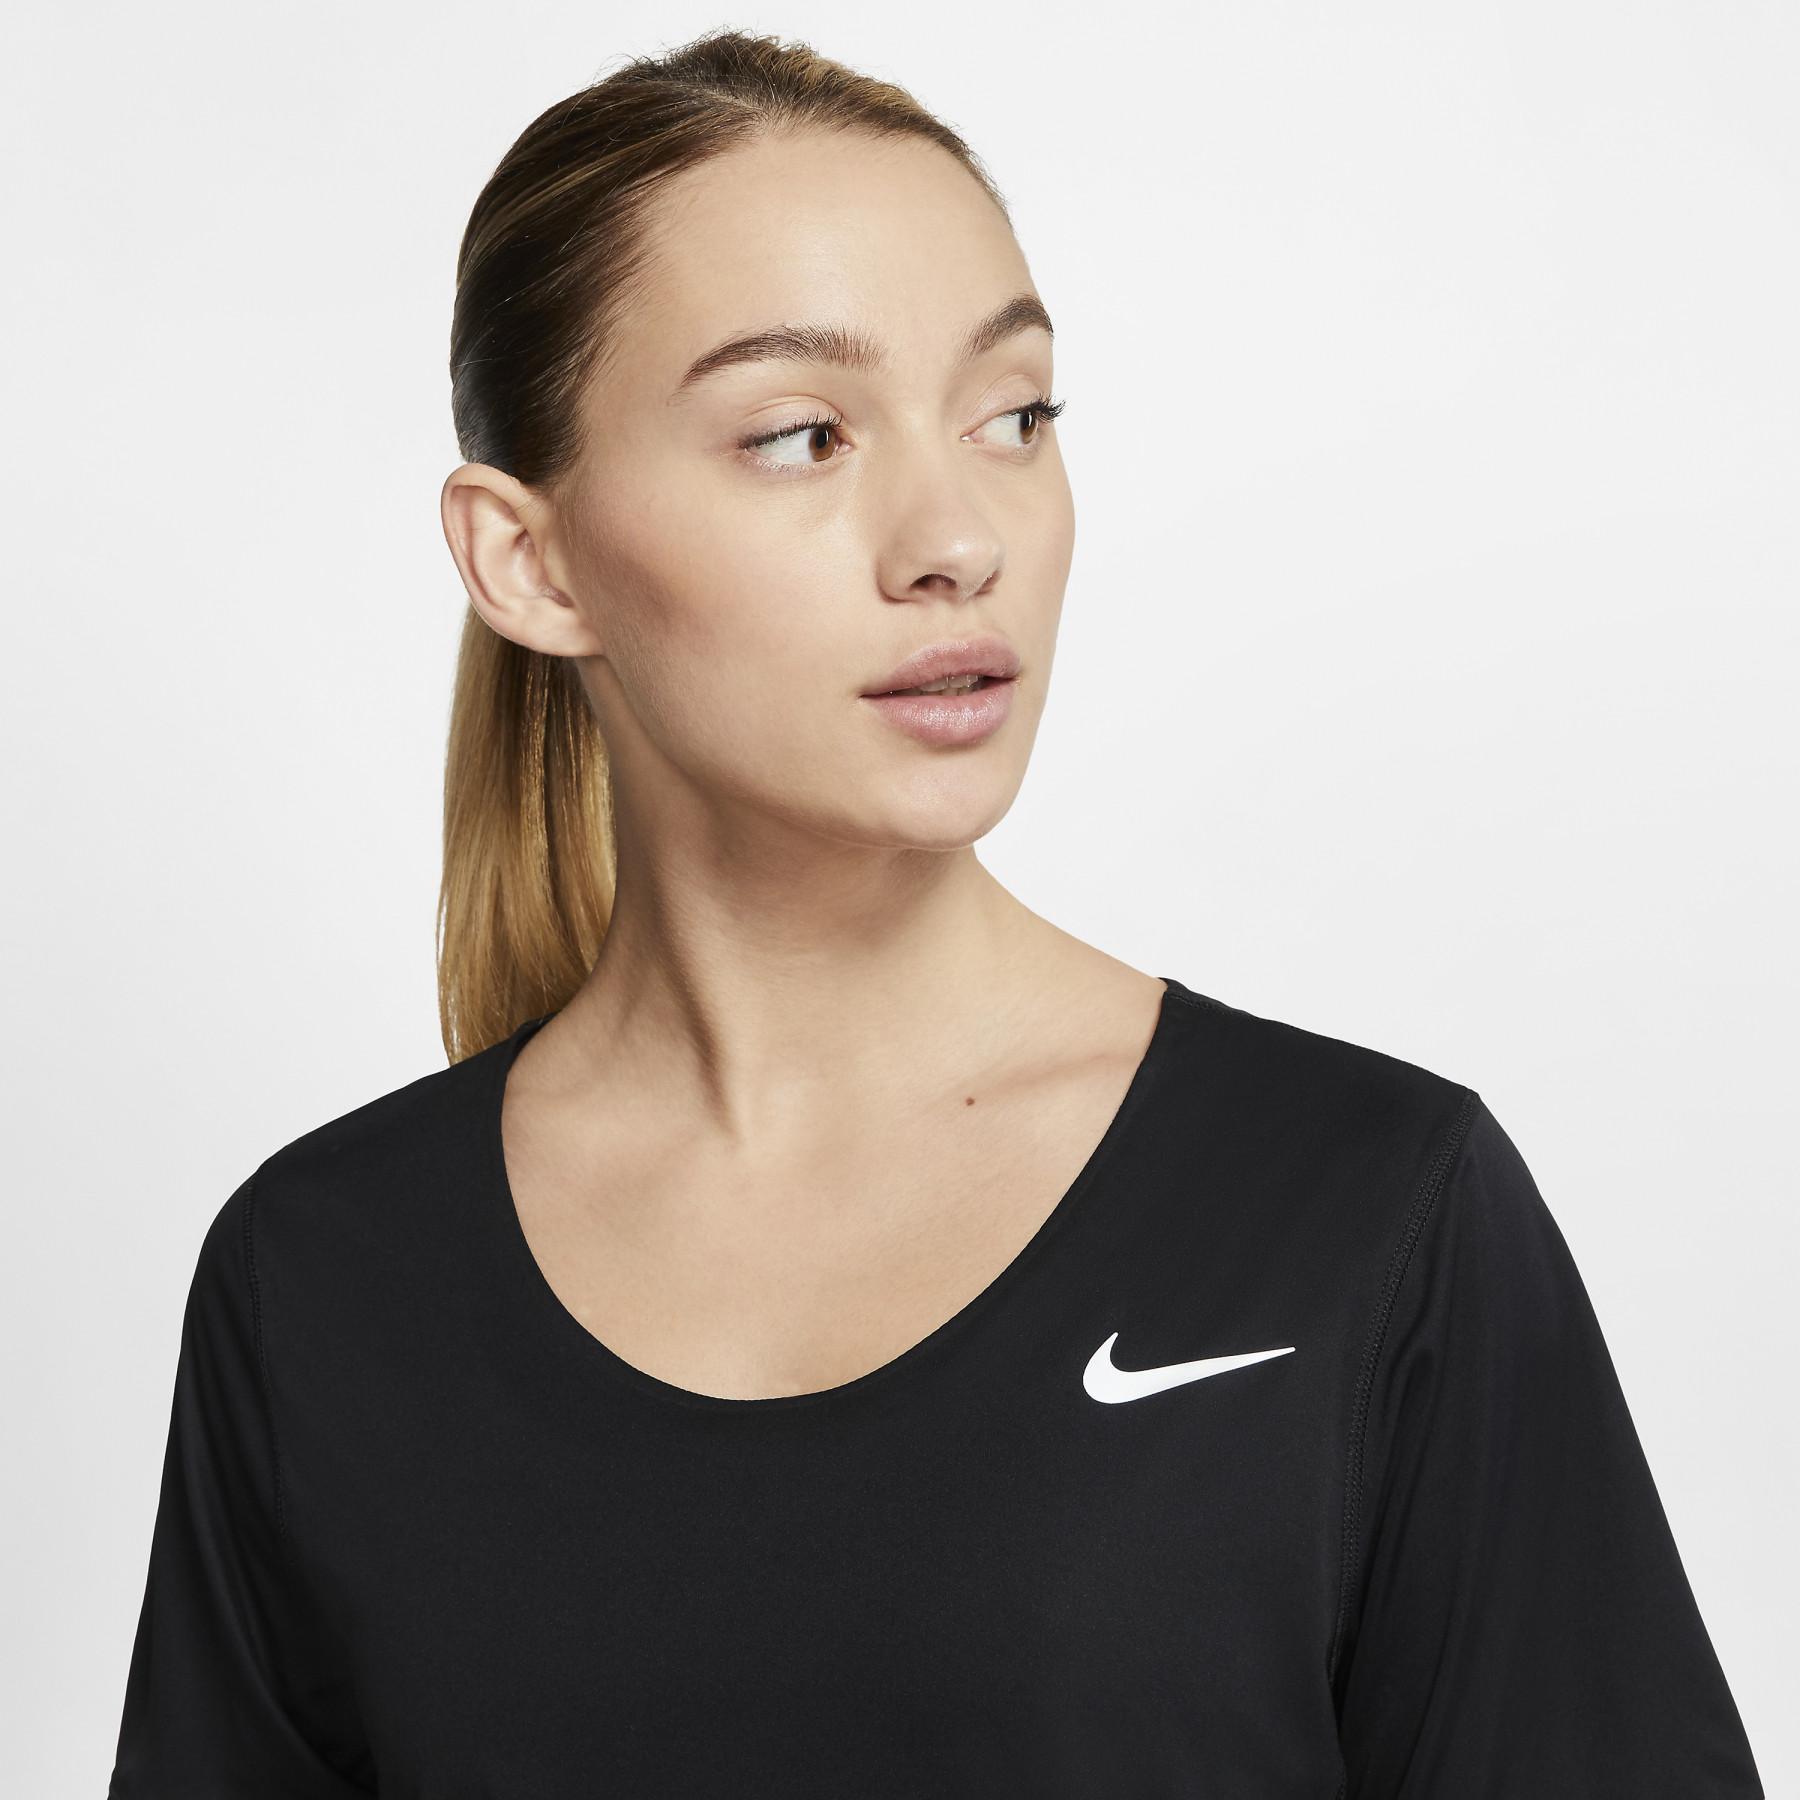 Women's jersey Nike City Sleek